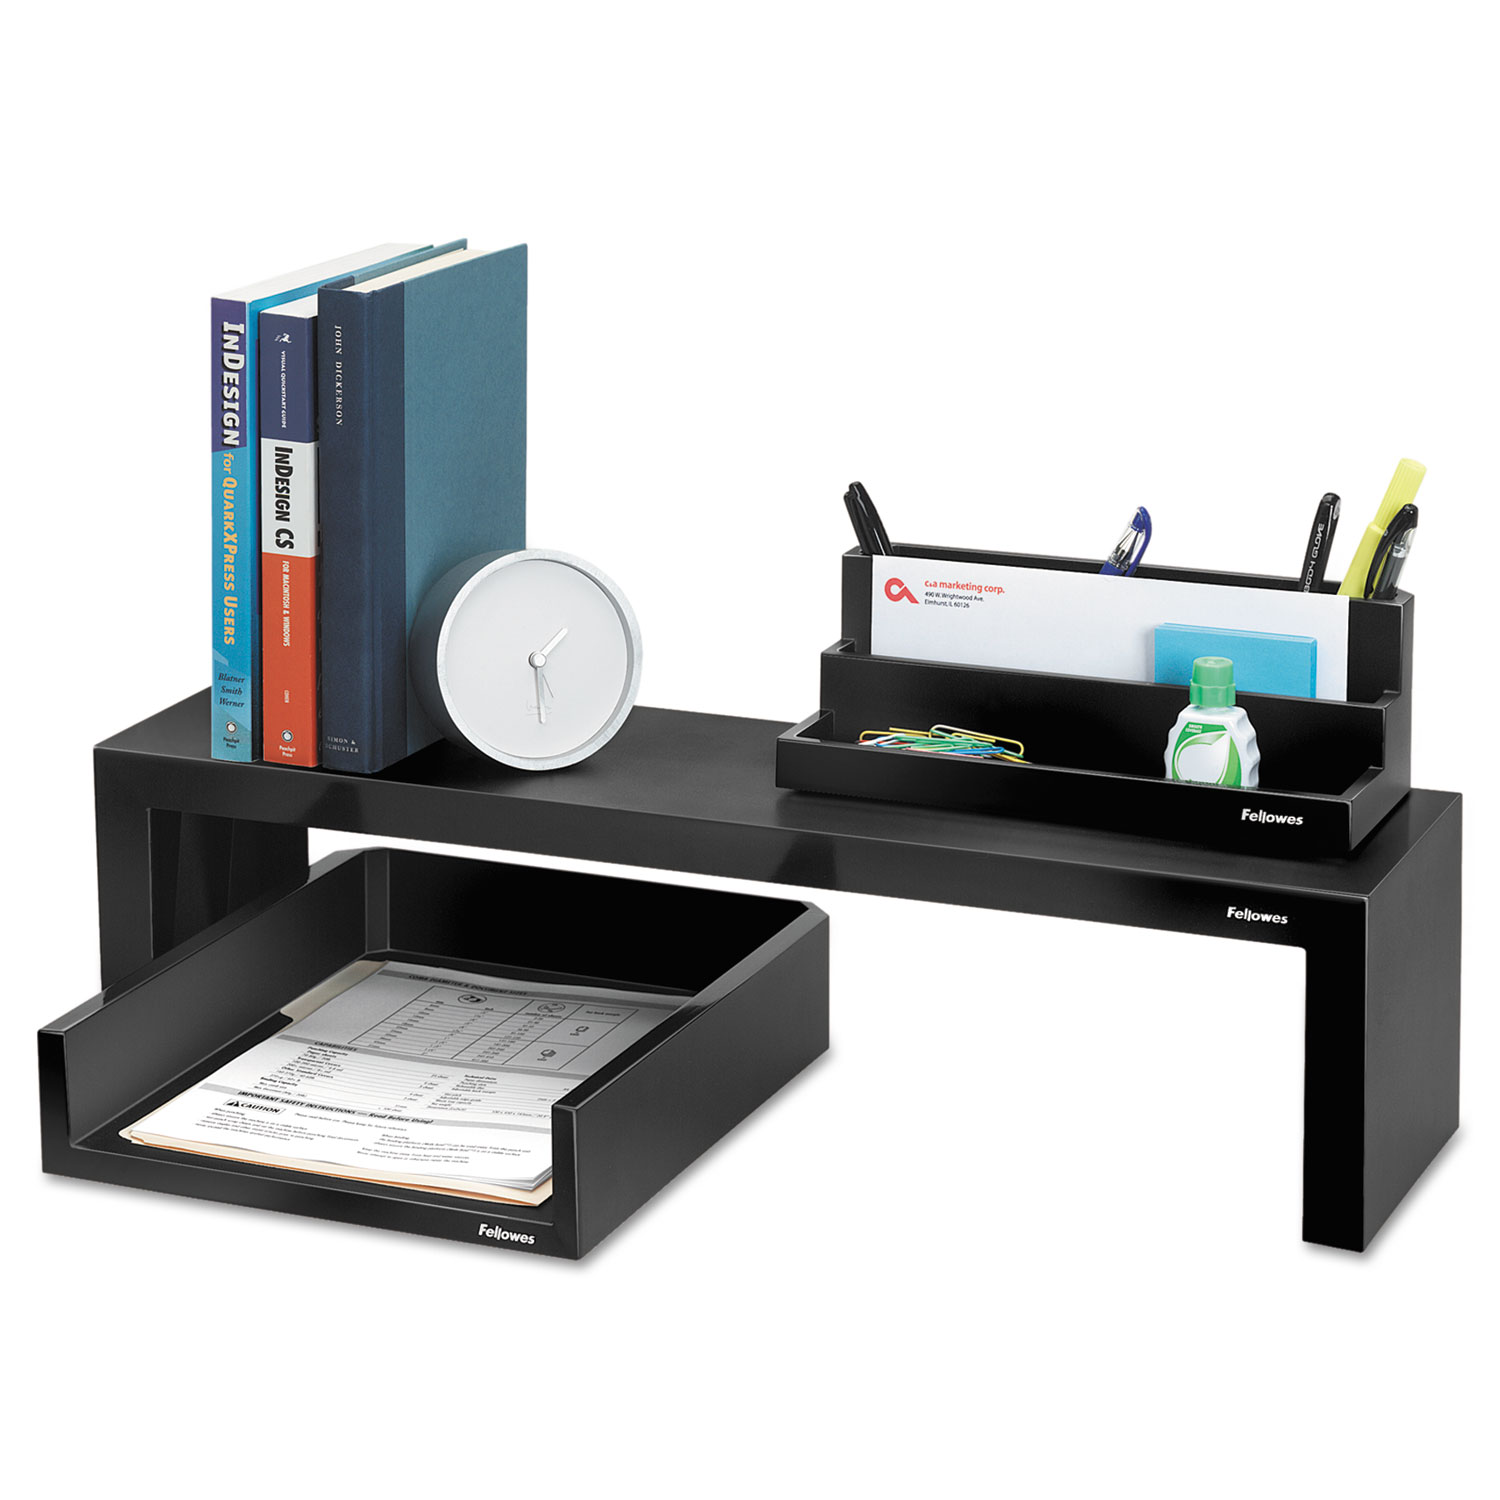 Designer Suites™ Shelf, 26 x 7 x 6 3/4, Black Pearl